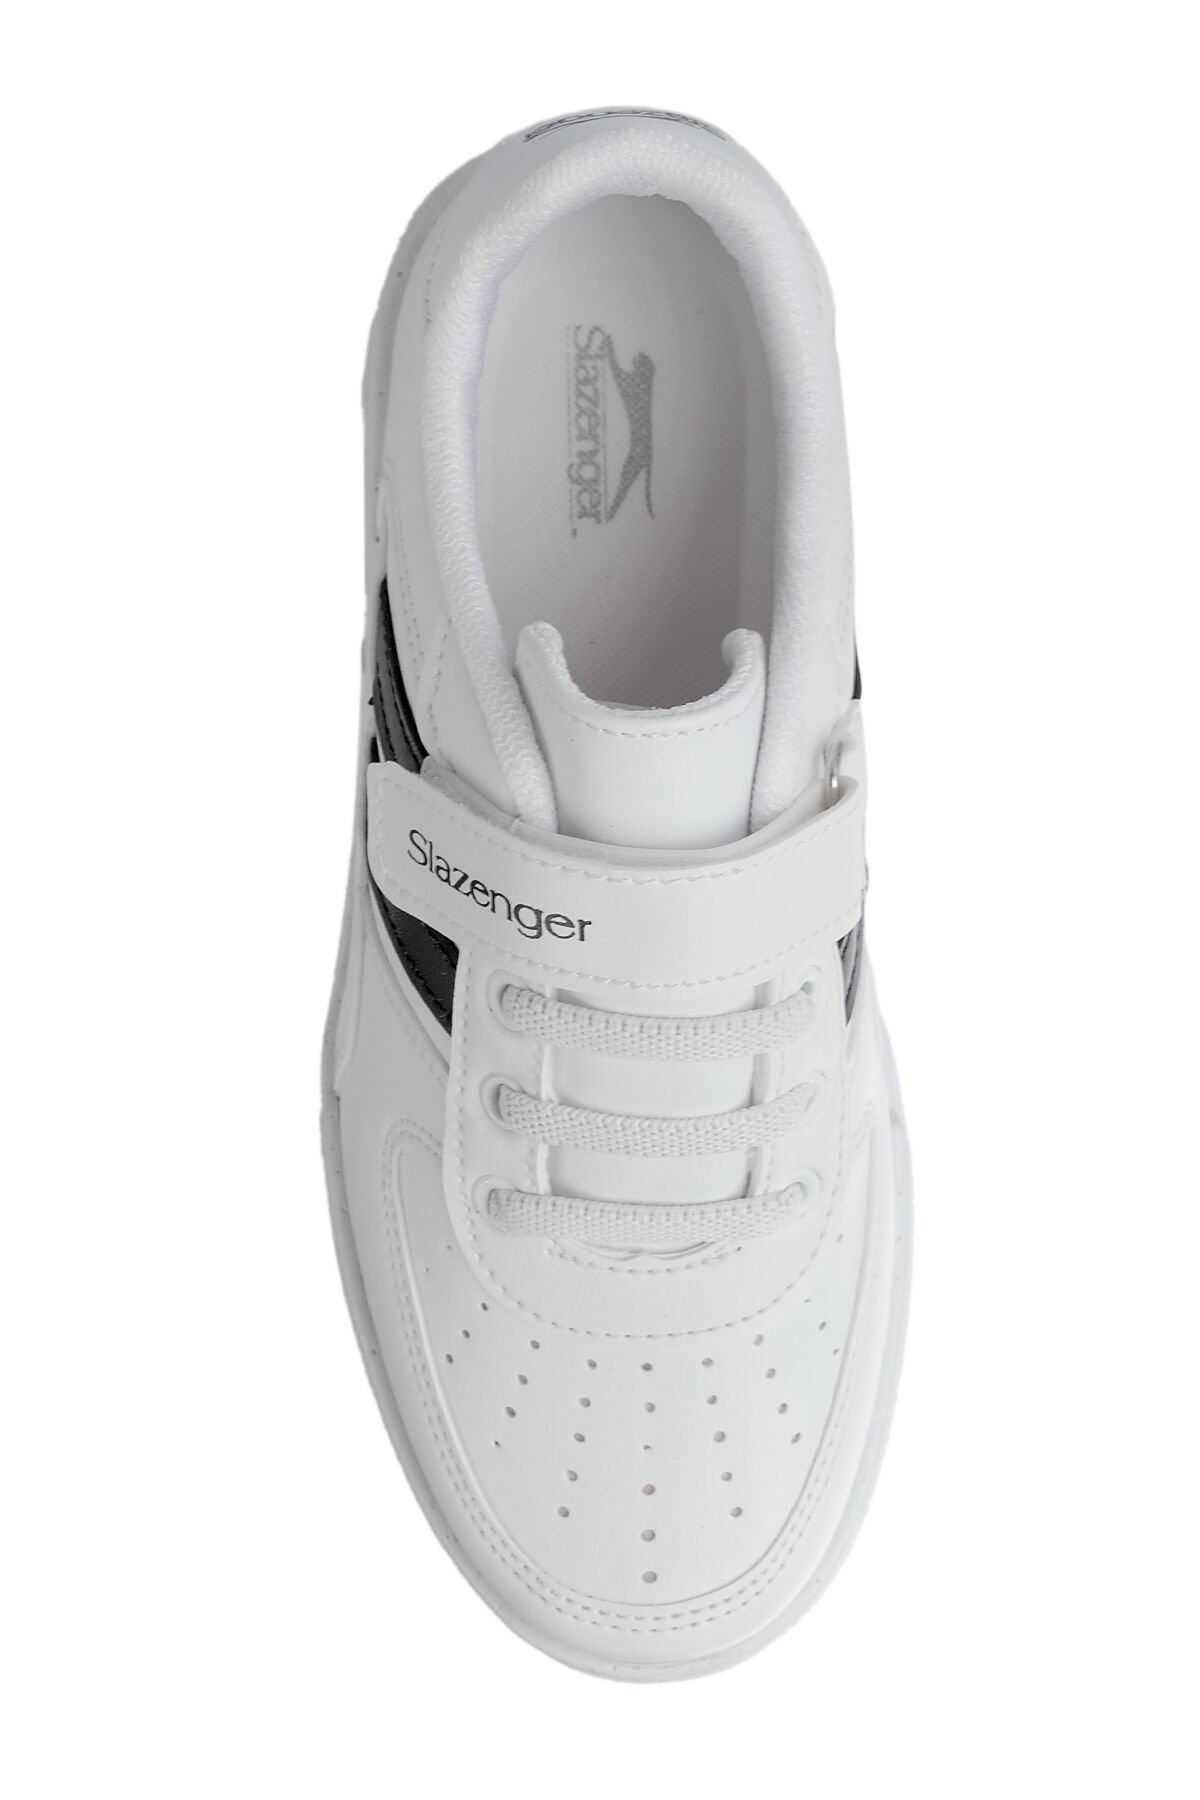 Slazenger CAMP Sneaker Erkek Çocuk Ayakkabı Beyaz / Siyah - Thumbnail